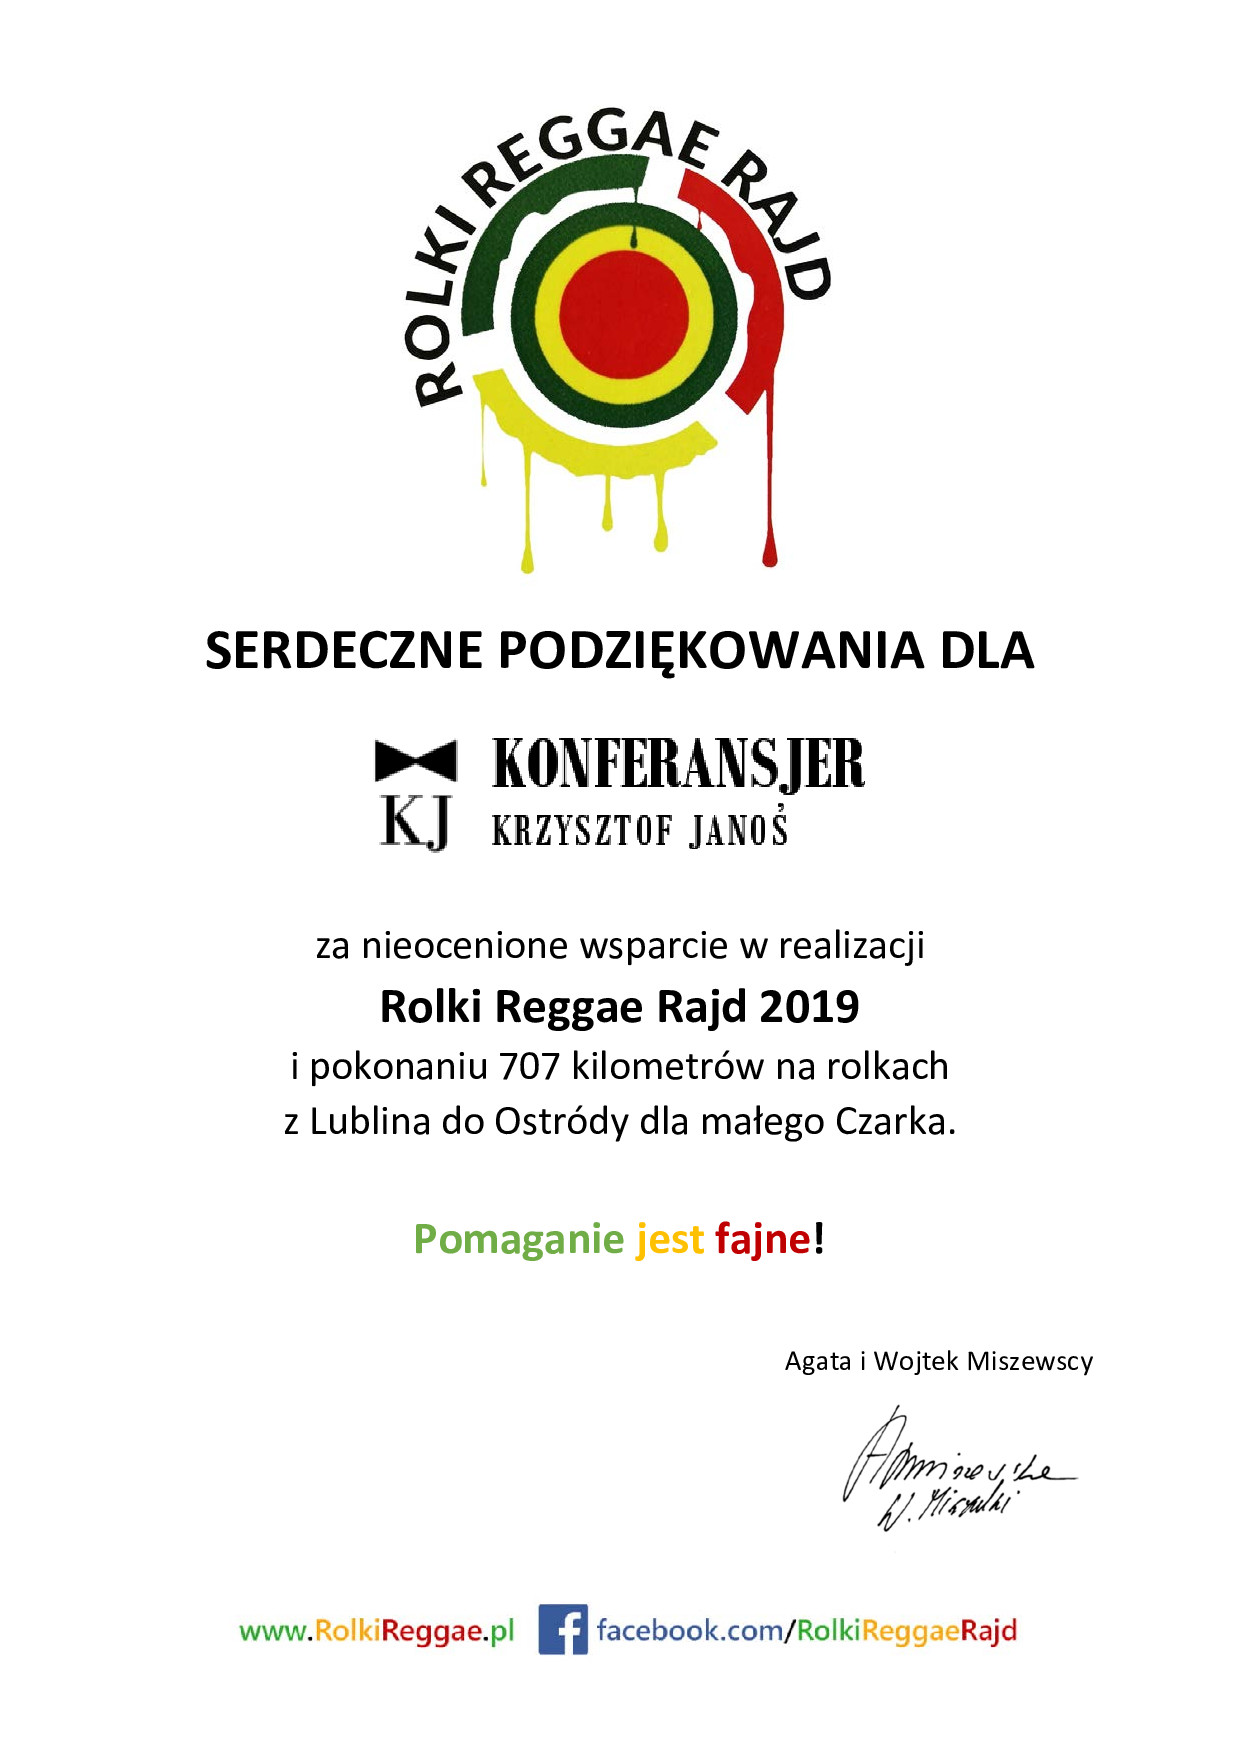 Rolki Reggae Rajd referencje Krzysztof Janoś konferansjer